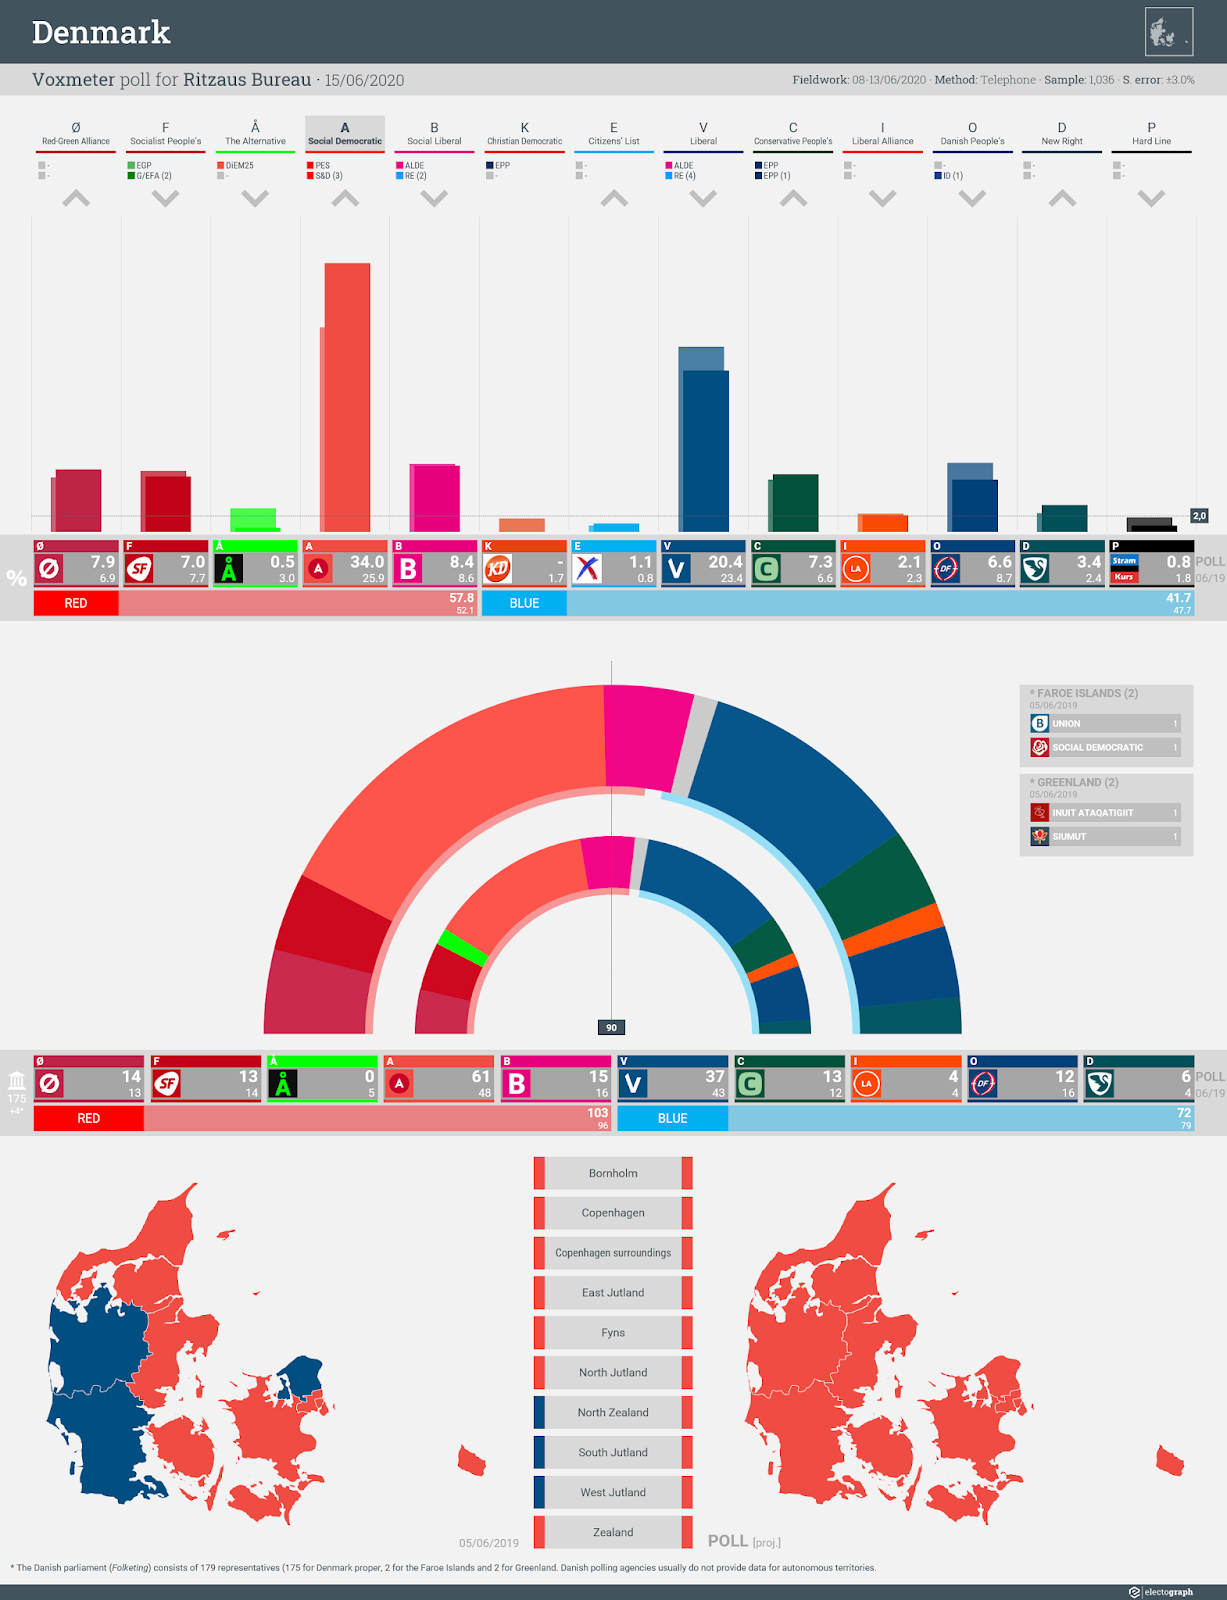 DENMARK: Voxmeter poll chart for Ritzaus Bureau, 15 June 2020